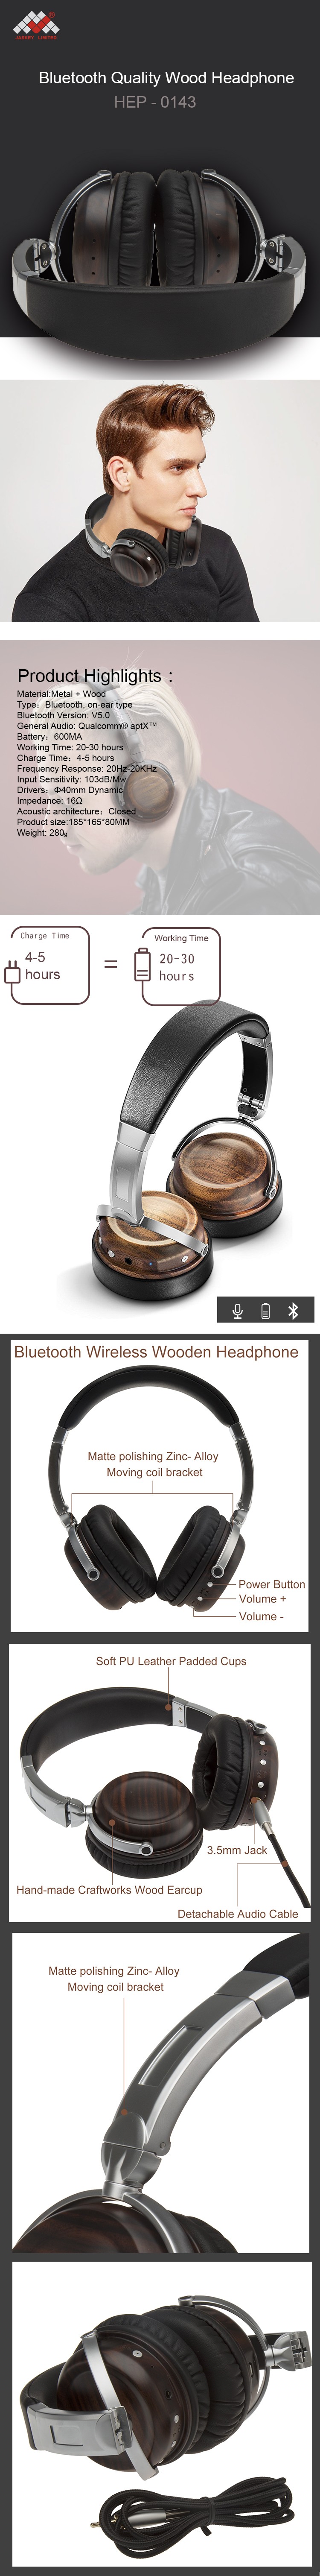 Wood Bluetooth Headphones